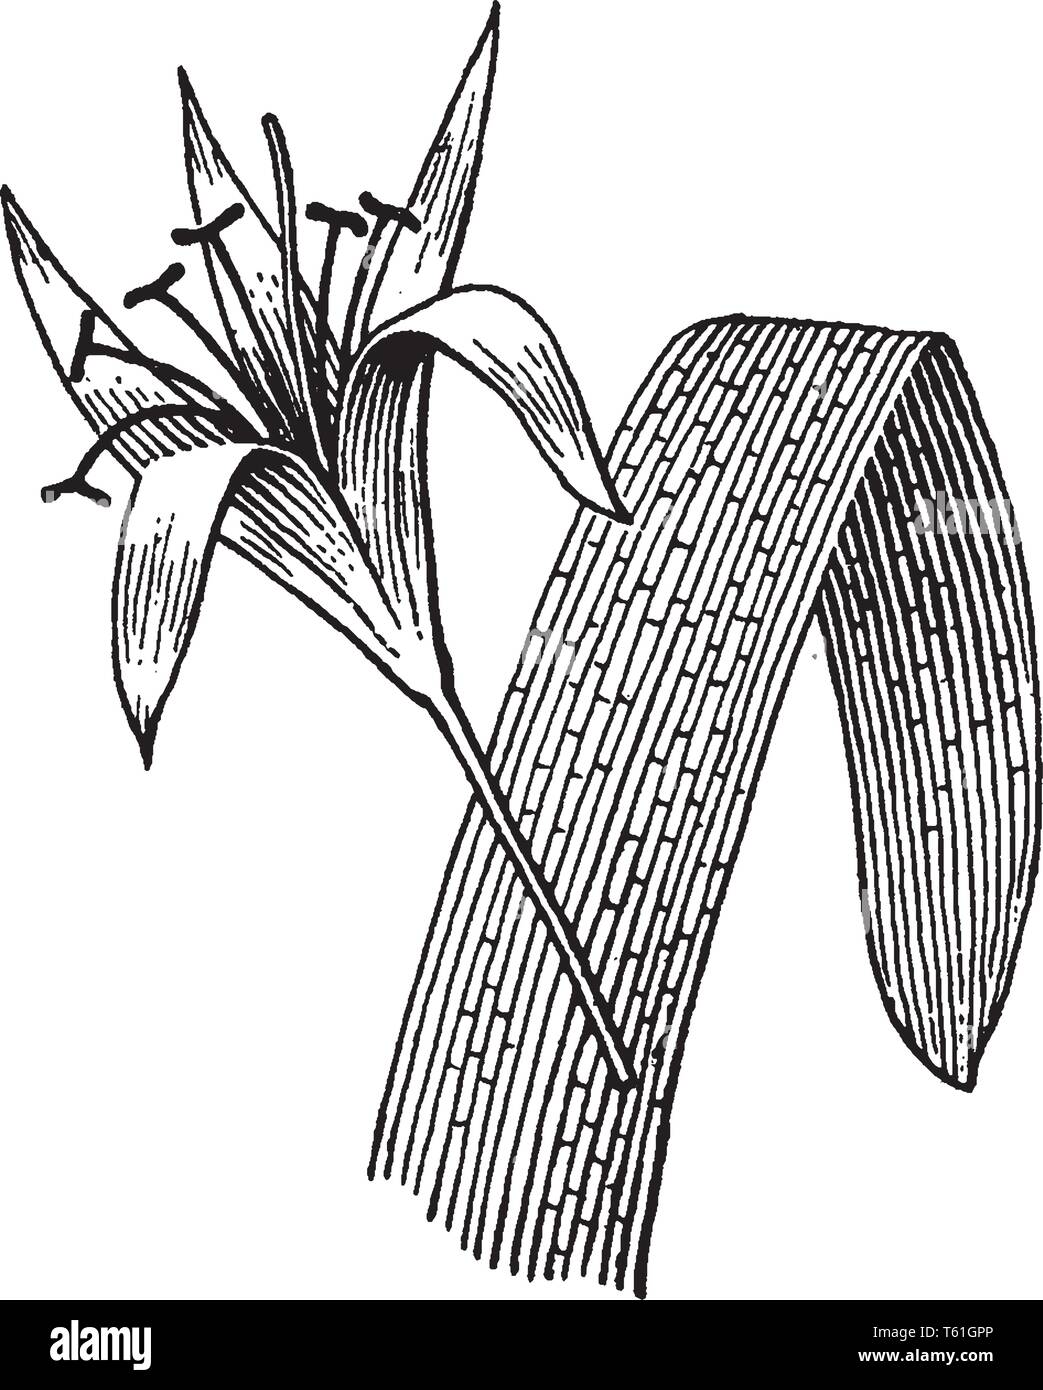 La foto è di un fiore con filamenti appartiene al genere Crinum. I fiori grandi sono sviluppati da lampadine su steli sfrondato, vintage disegno della linea Illustrazione Vettoriale